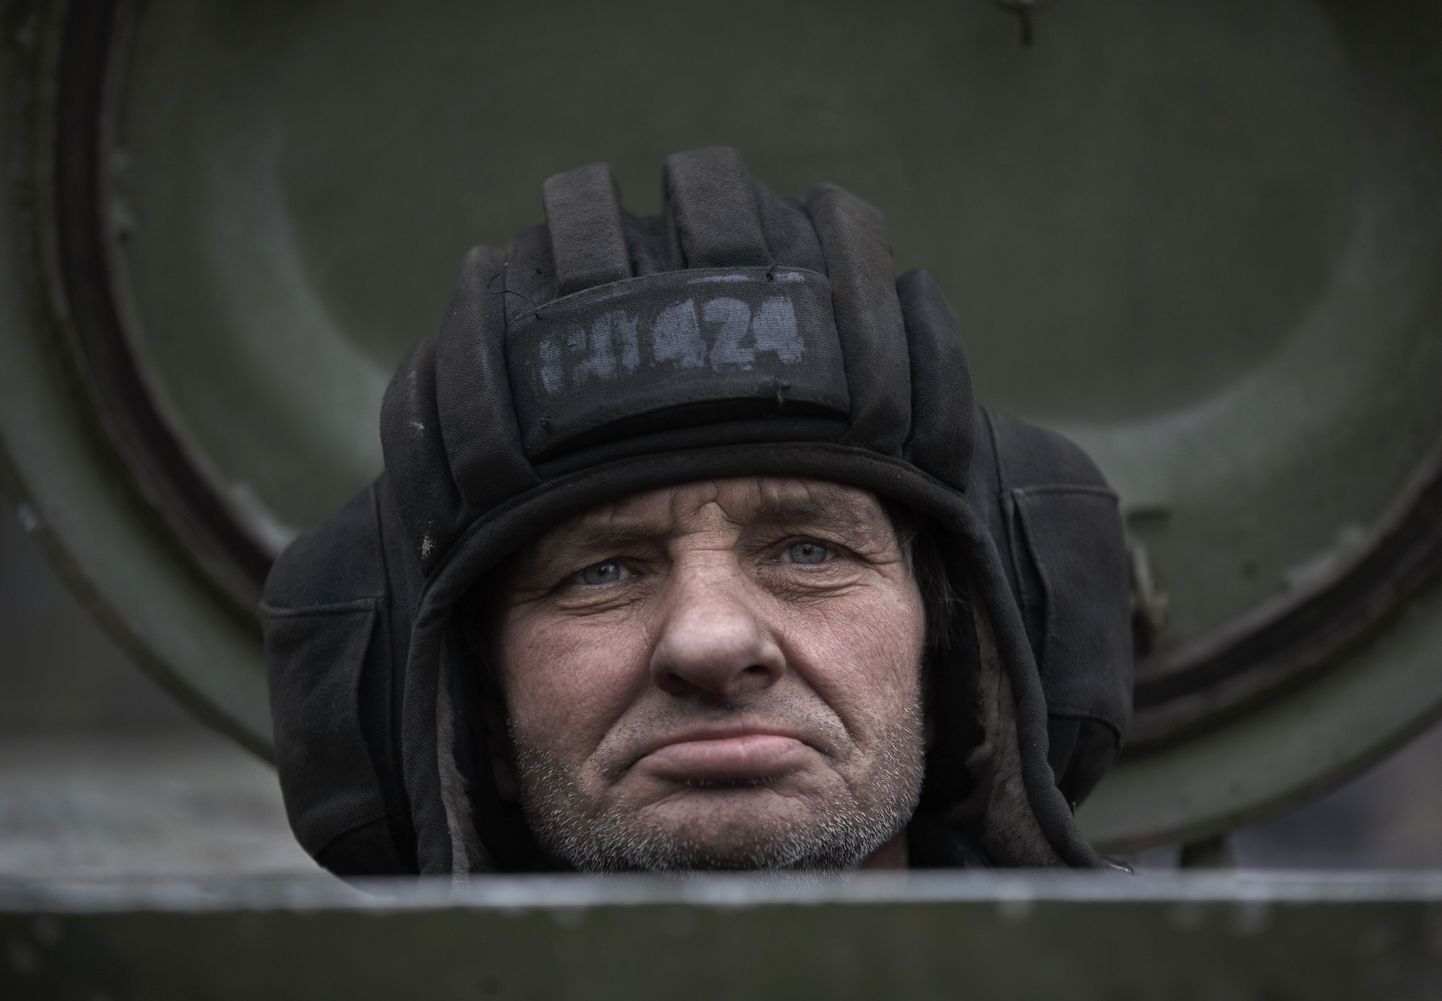 Venemaa toetusega niinimetatud separatist Vene tankis.